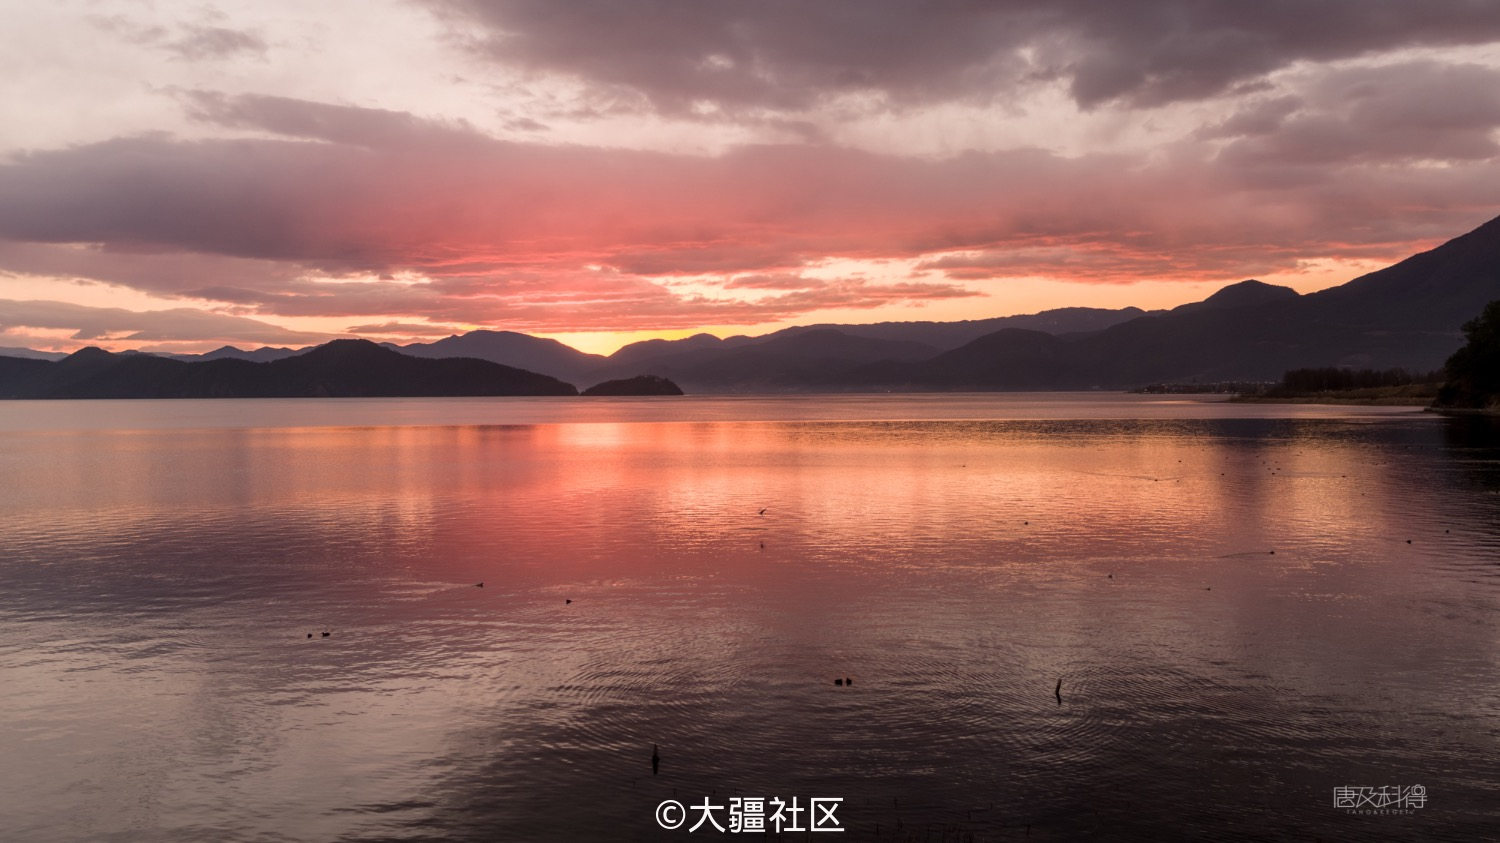 拍摄点:泸沽湖小渔坝码头